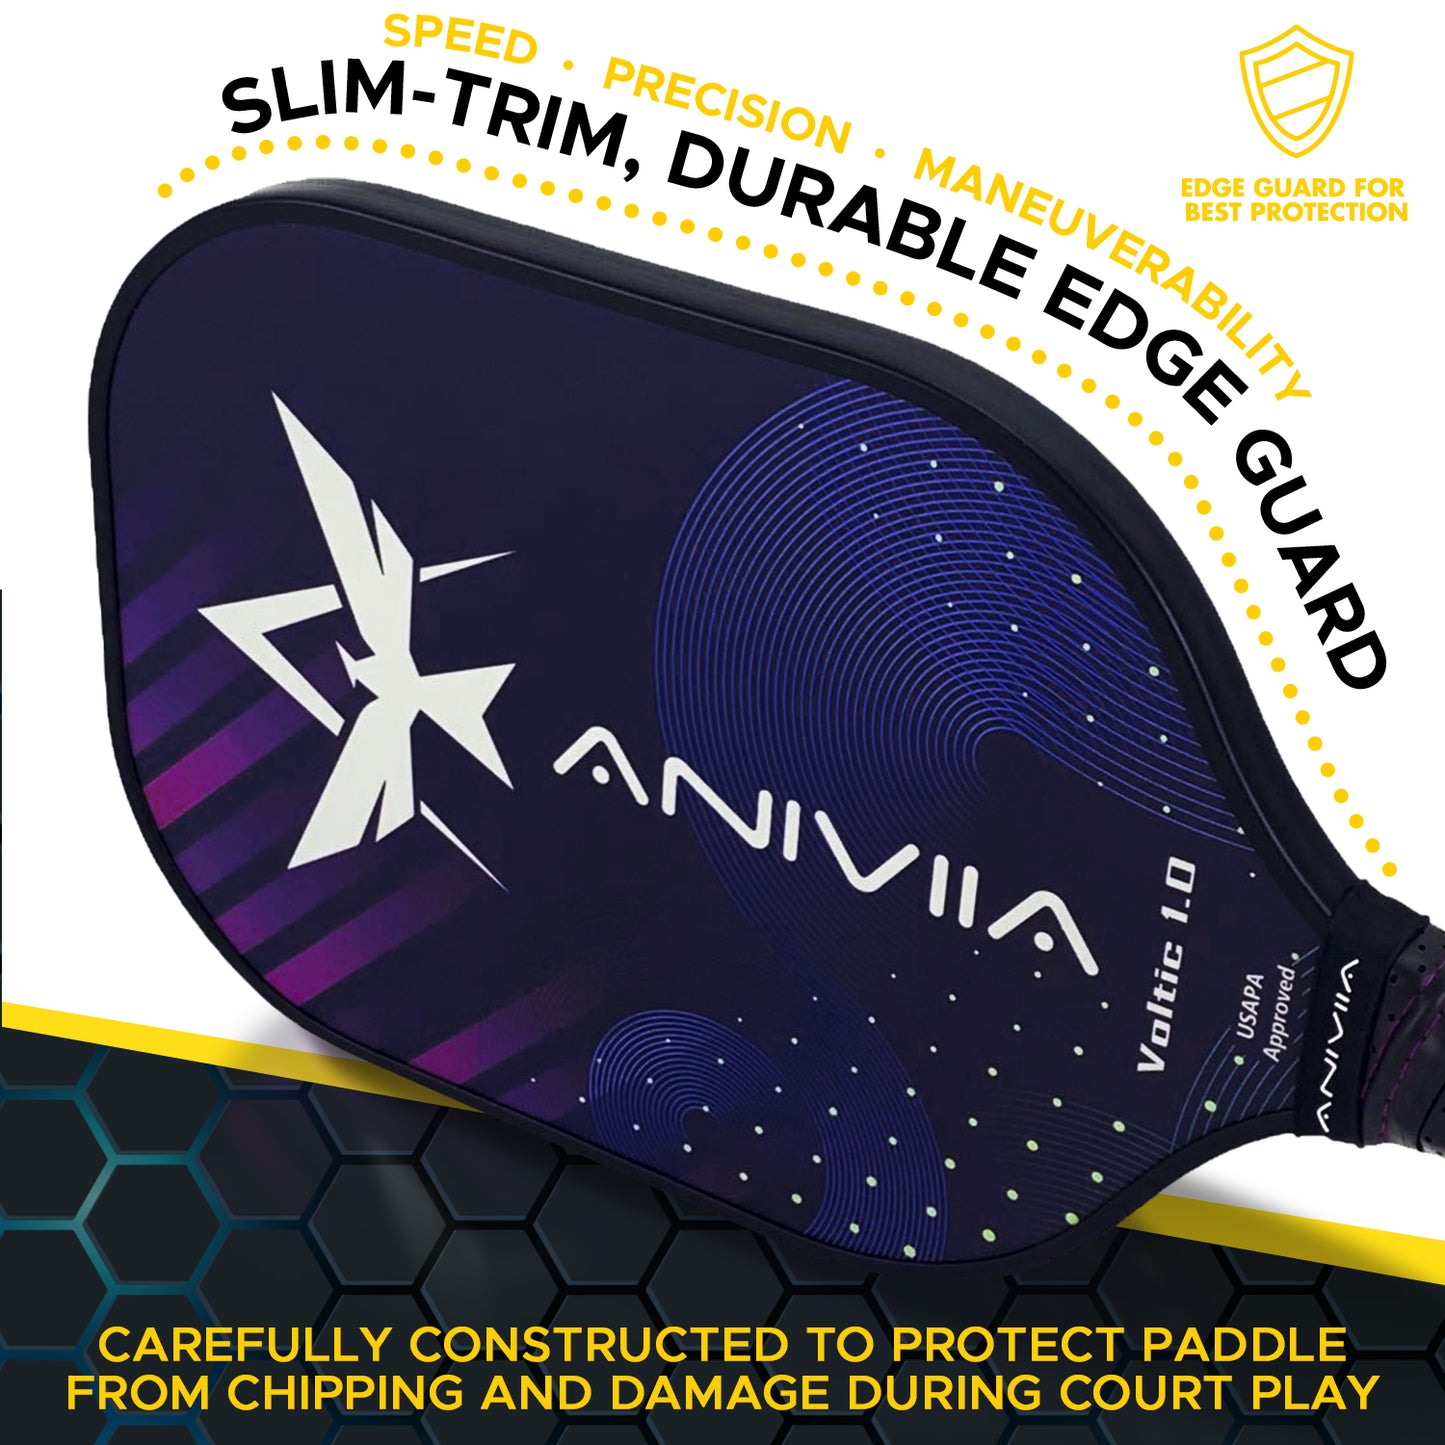 Aniviia Voltic 1.0 槳 2 件套 - USAPA 批准（16 毫米芯）